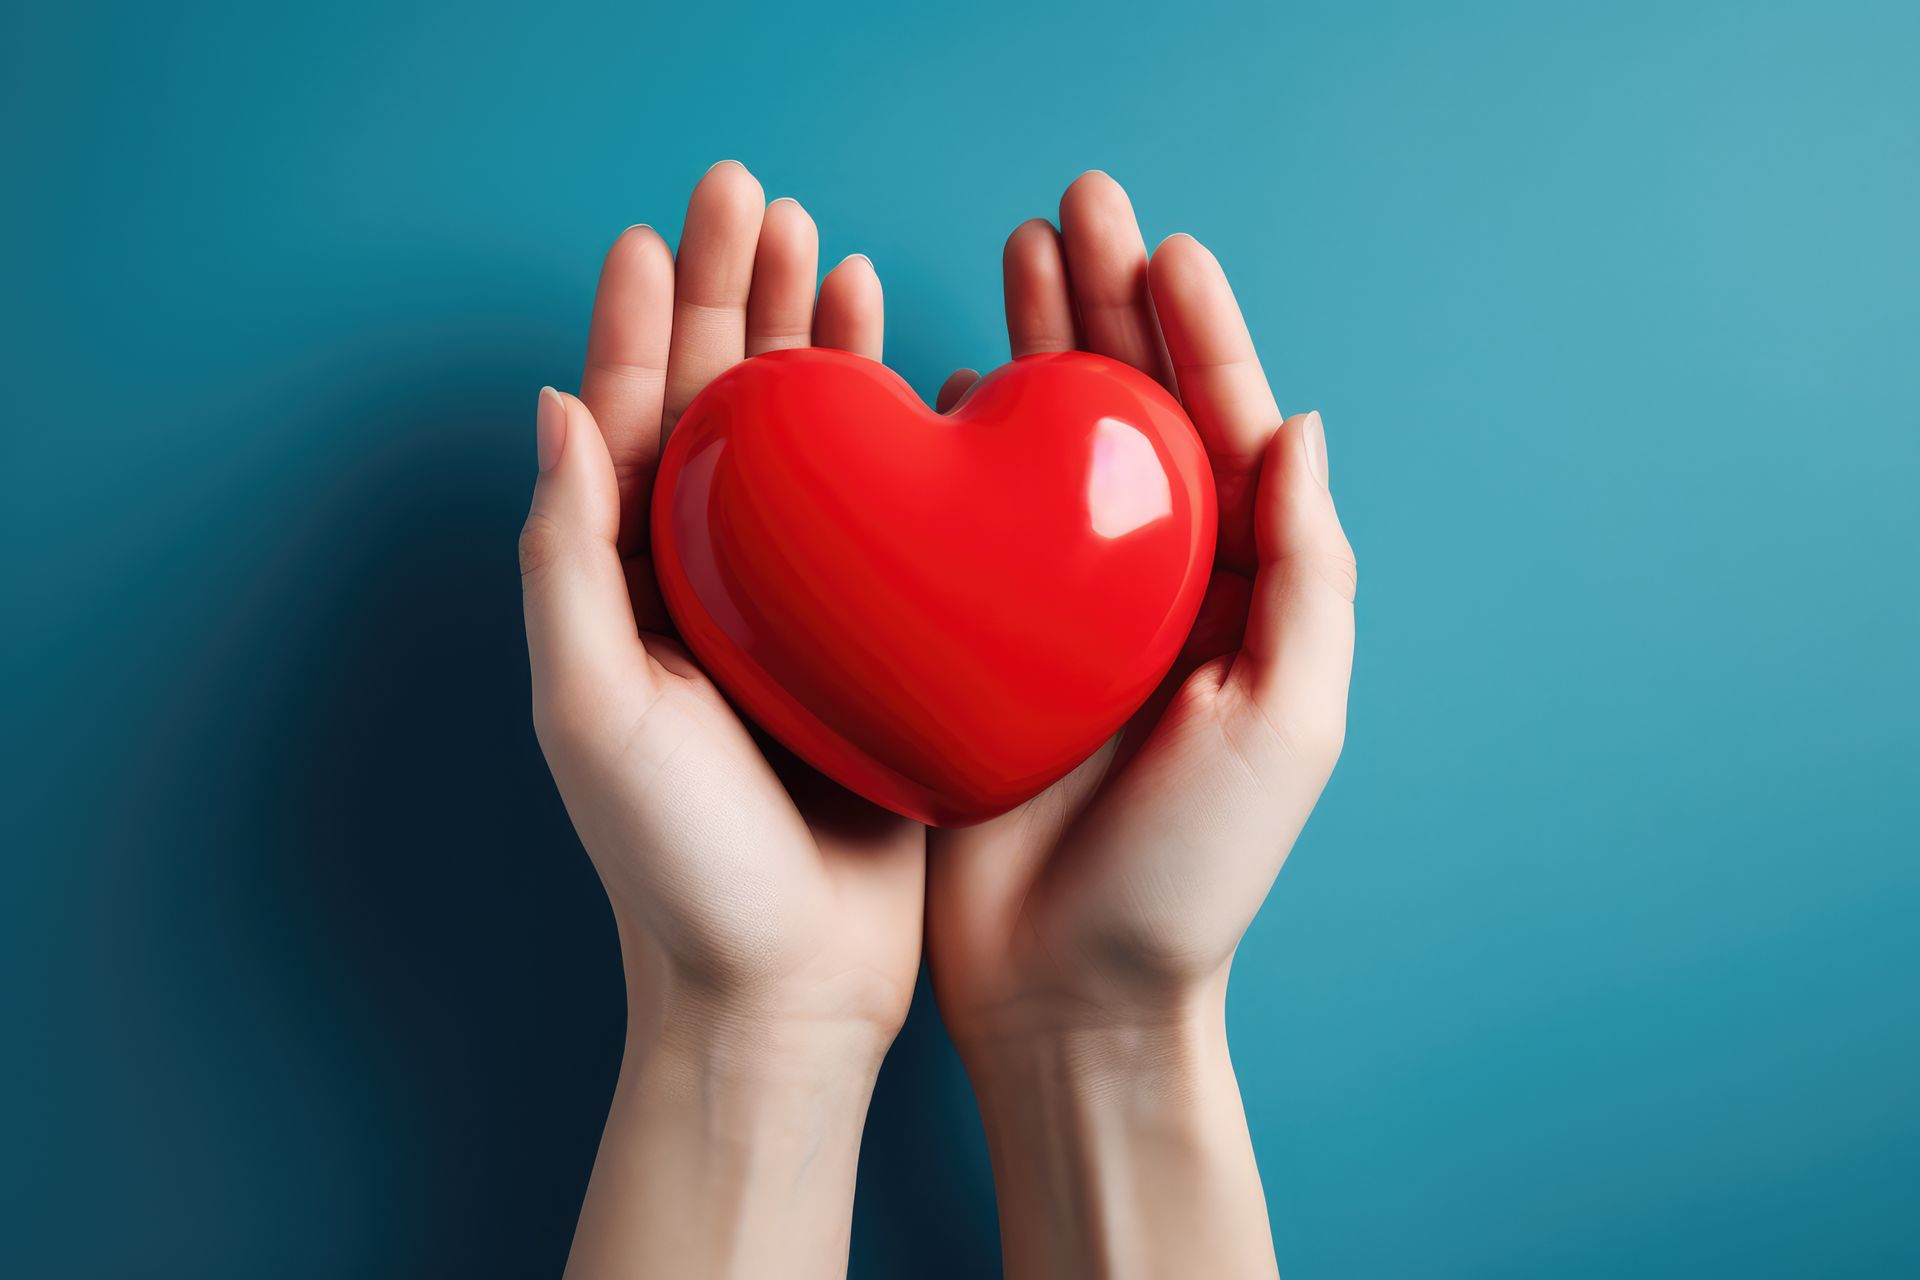 Zwei Hände halten vorsichtig ein glänzendes rotes Herz vor einem blauen Hintergrund, symbolisch für Liebe und Fürsorge.